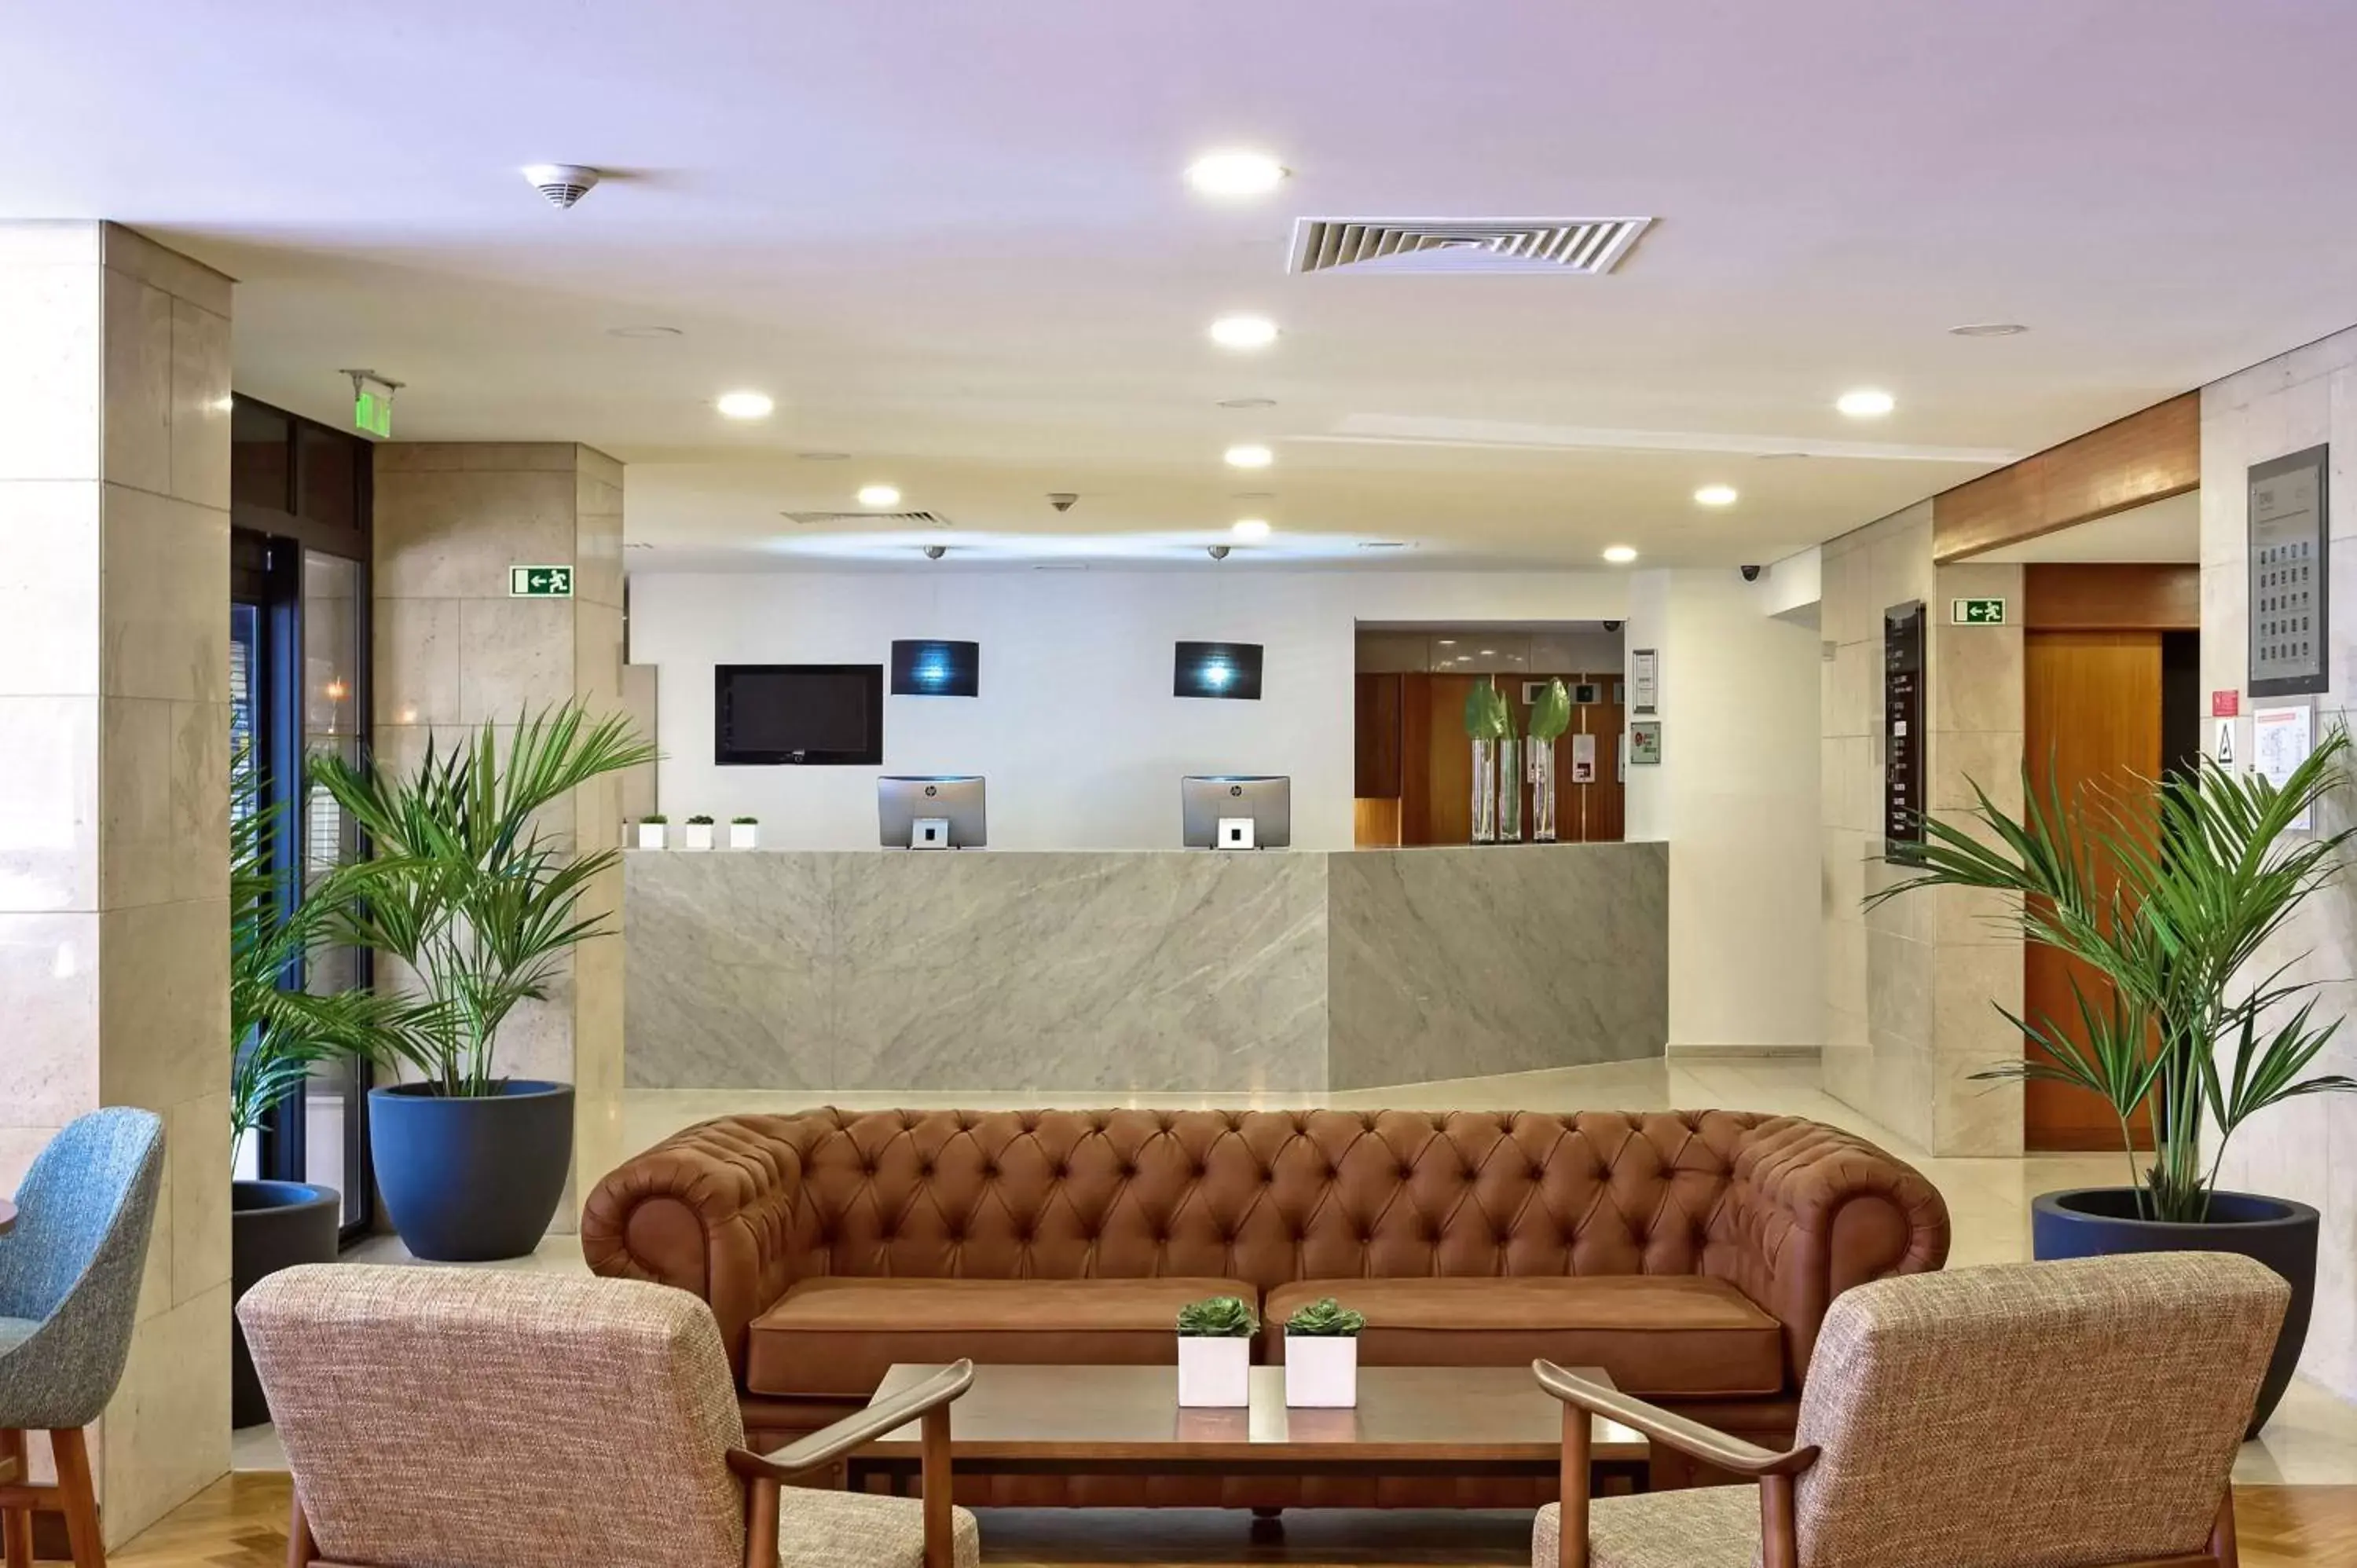 Lobby or reception, Lobby/Reception in Tivoli Coimbra Hotel